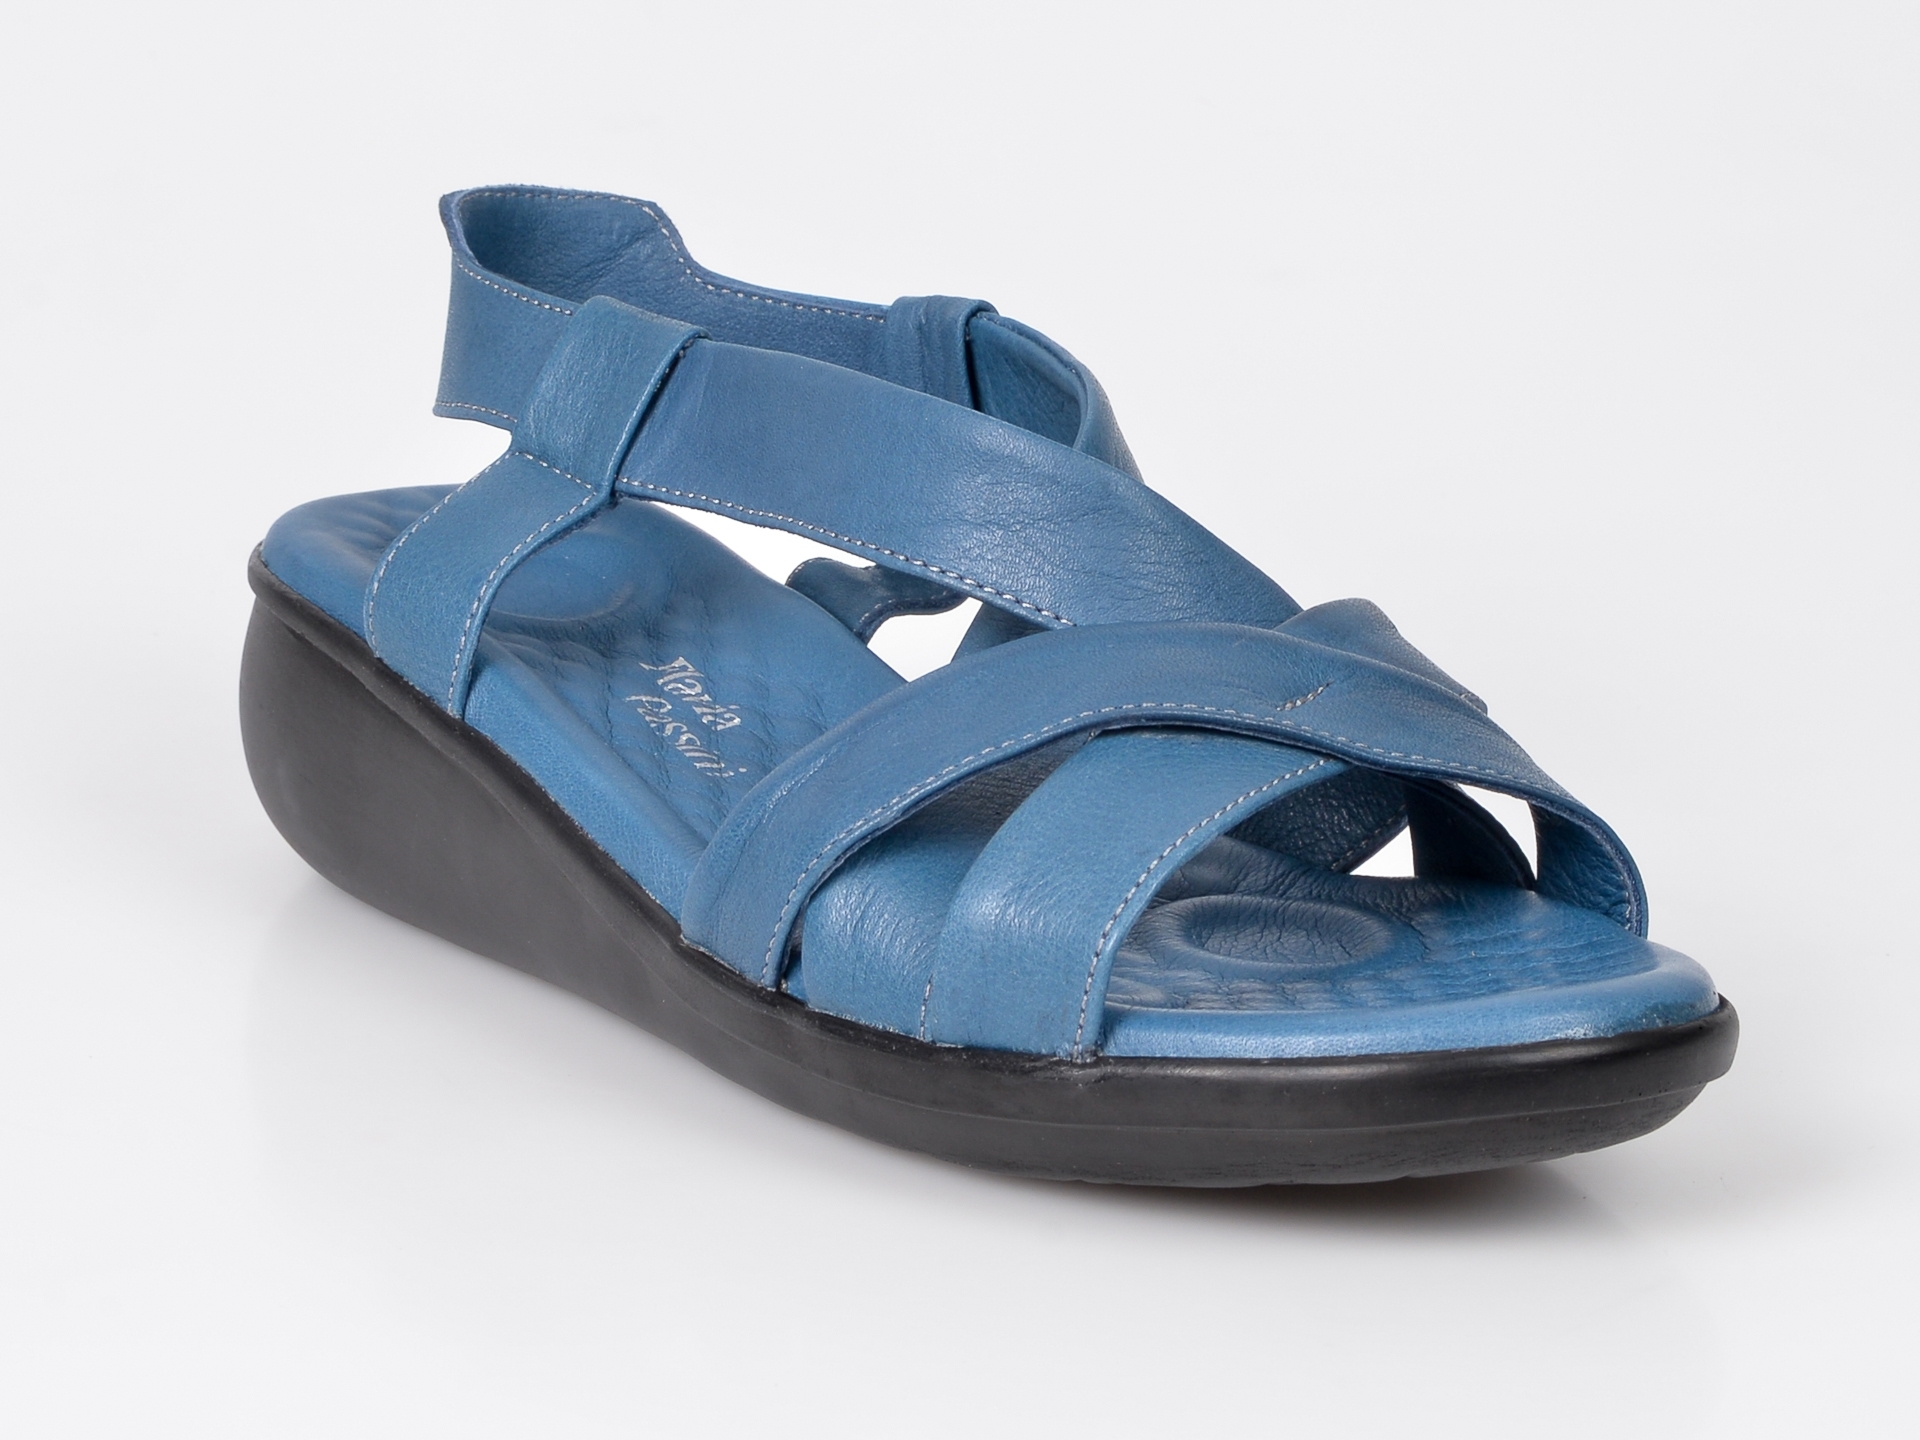 Sandale FLAVIA PASSINI albastre, din piele naturala Flavia Passini imagine noua